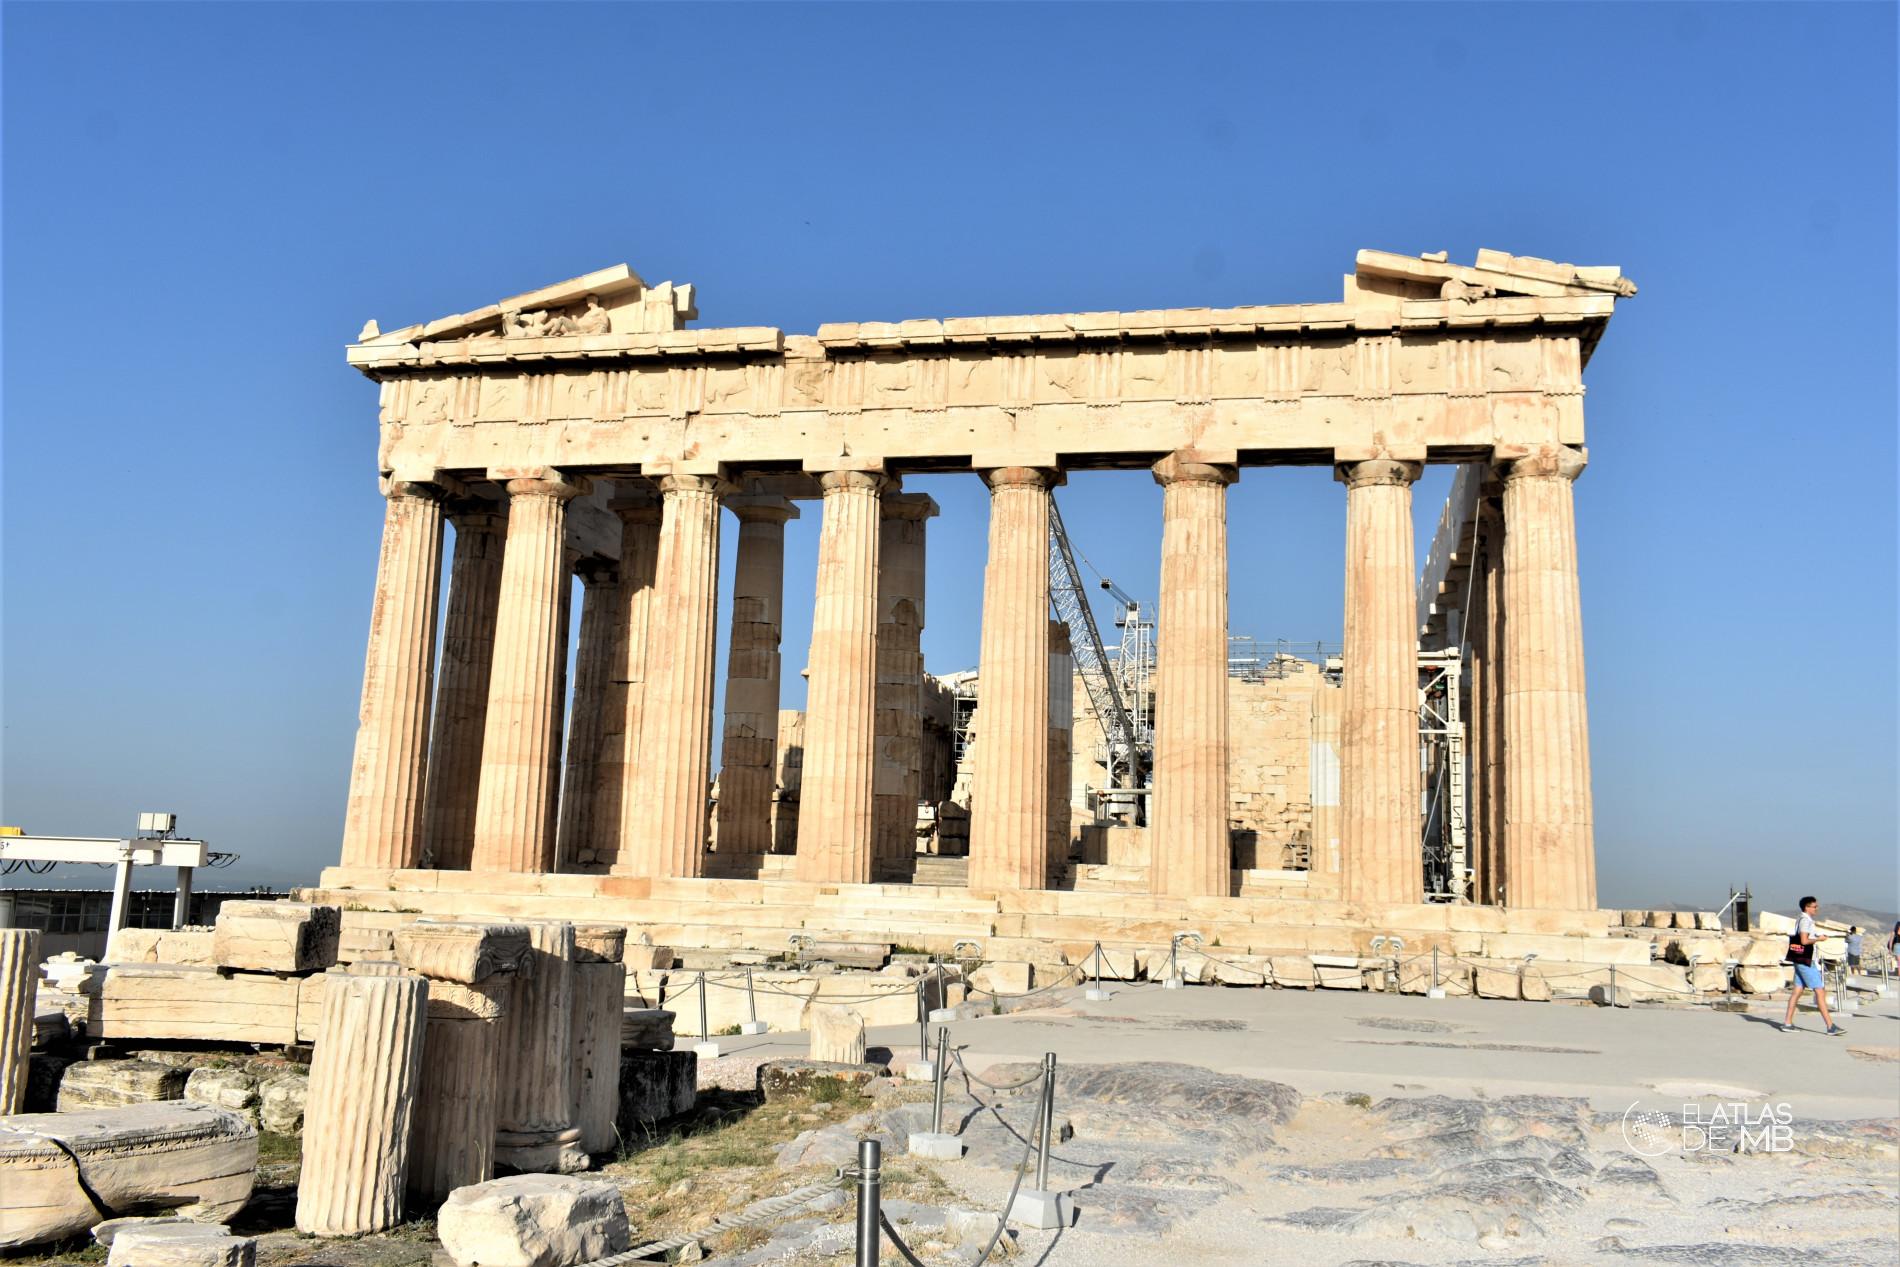 El Partenón de Atenas